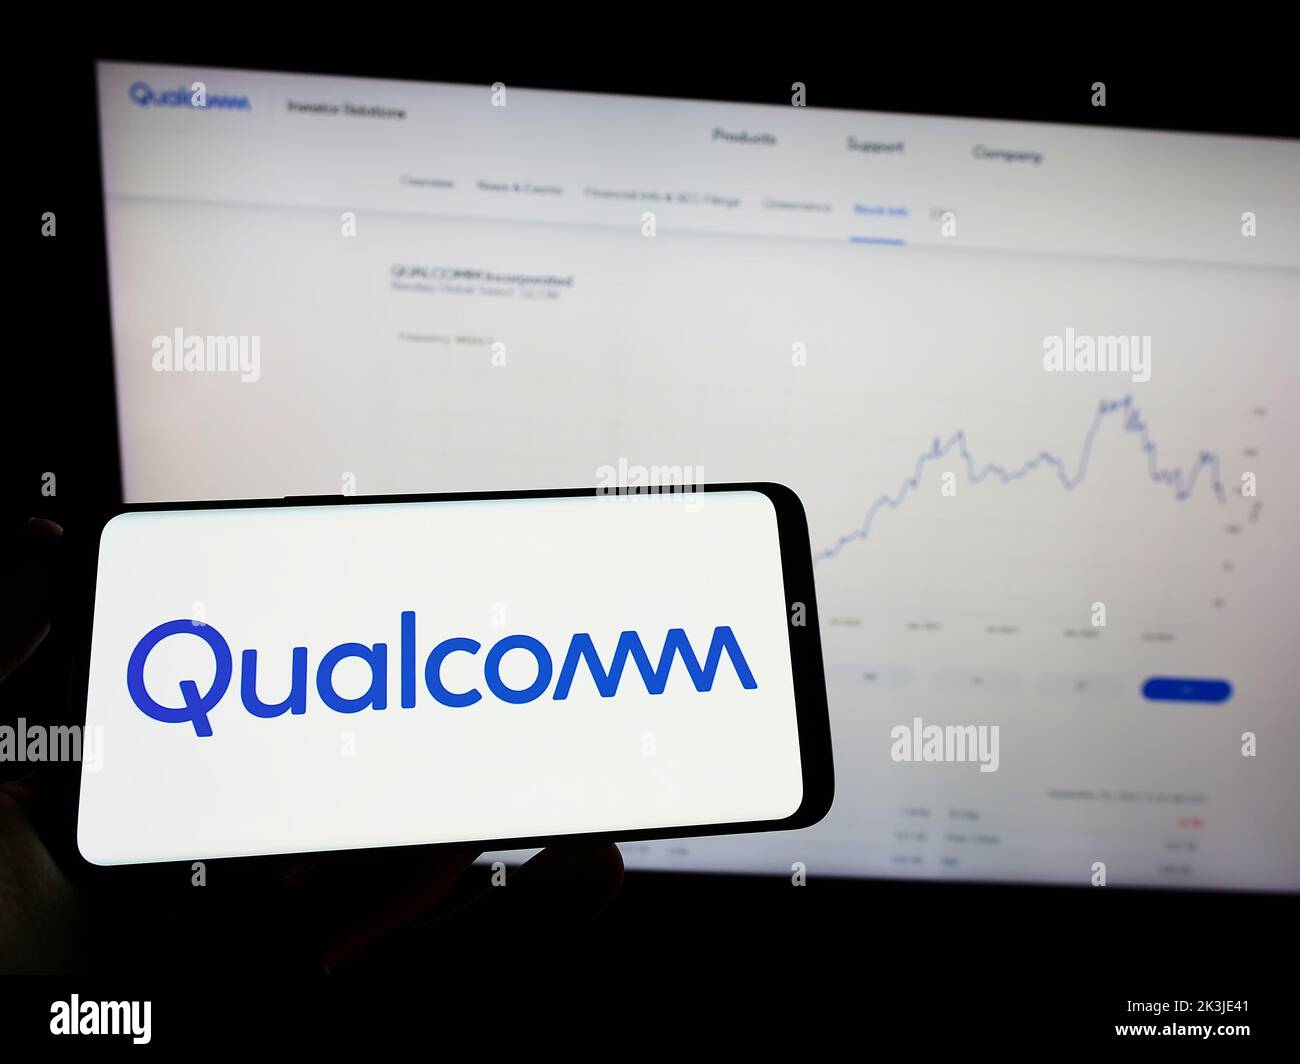 Personne tenant un smartphone portant le logo de la société américaine Qualcomm Incorporated, spécialisée dans les semi-conducteurs, à l'écran, devant le site Web. Mise au point sur l'affichage du téléphone. Banque D'Images